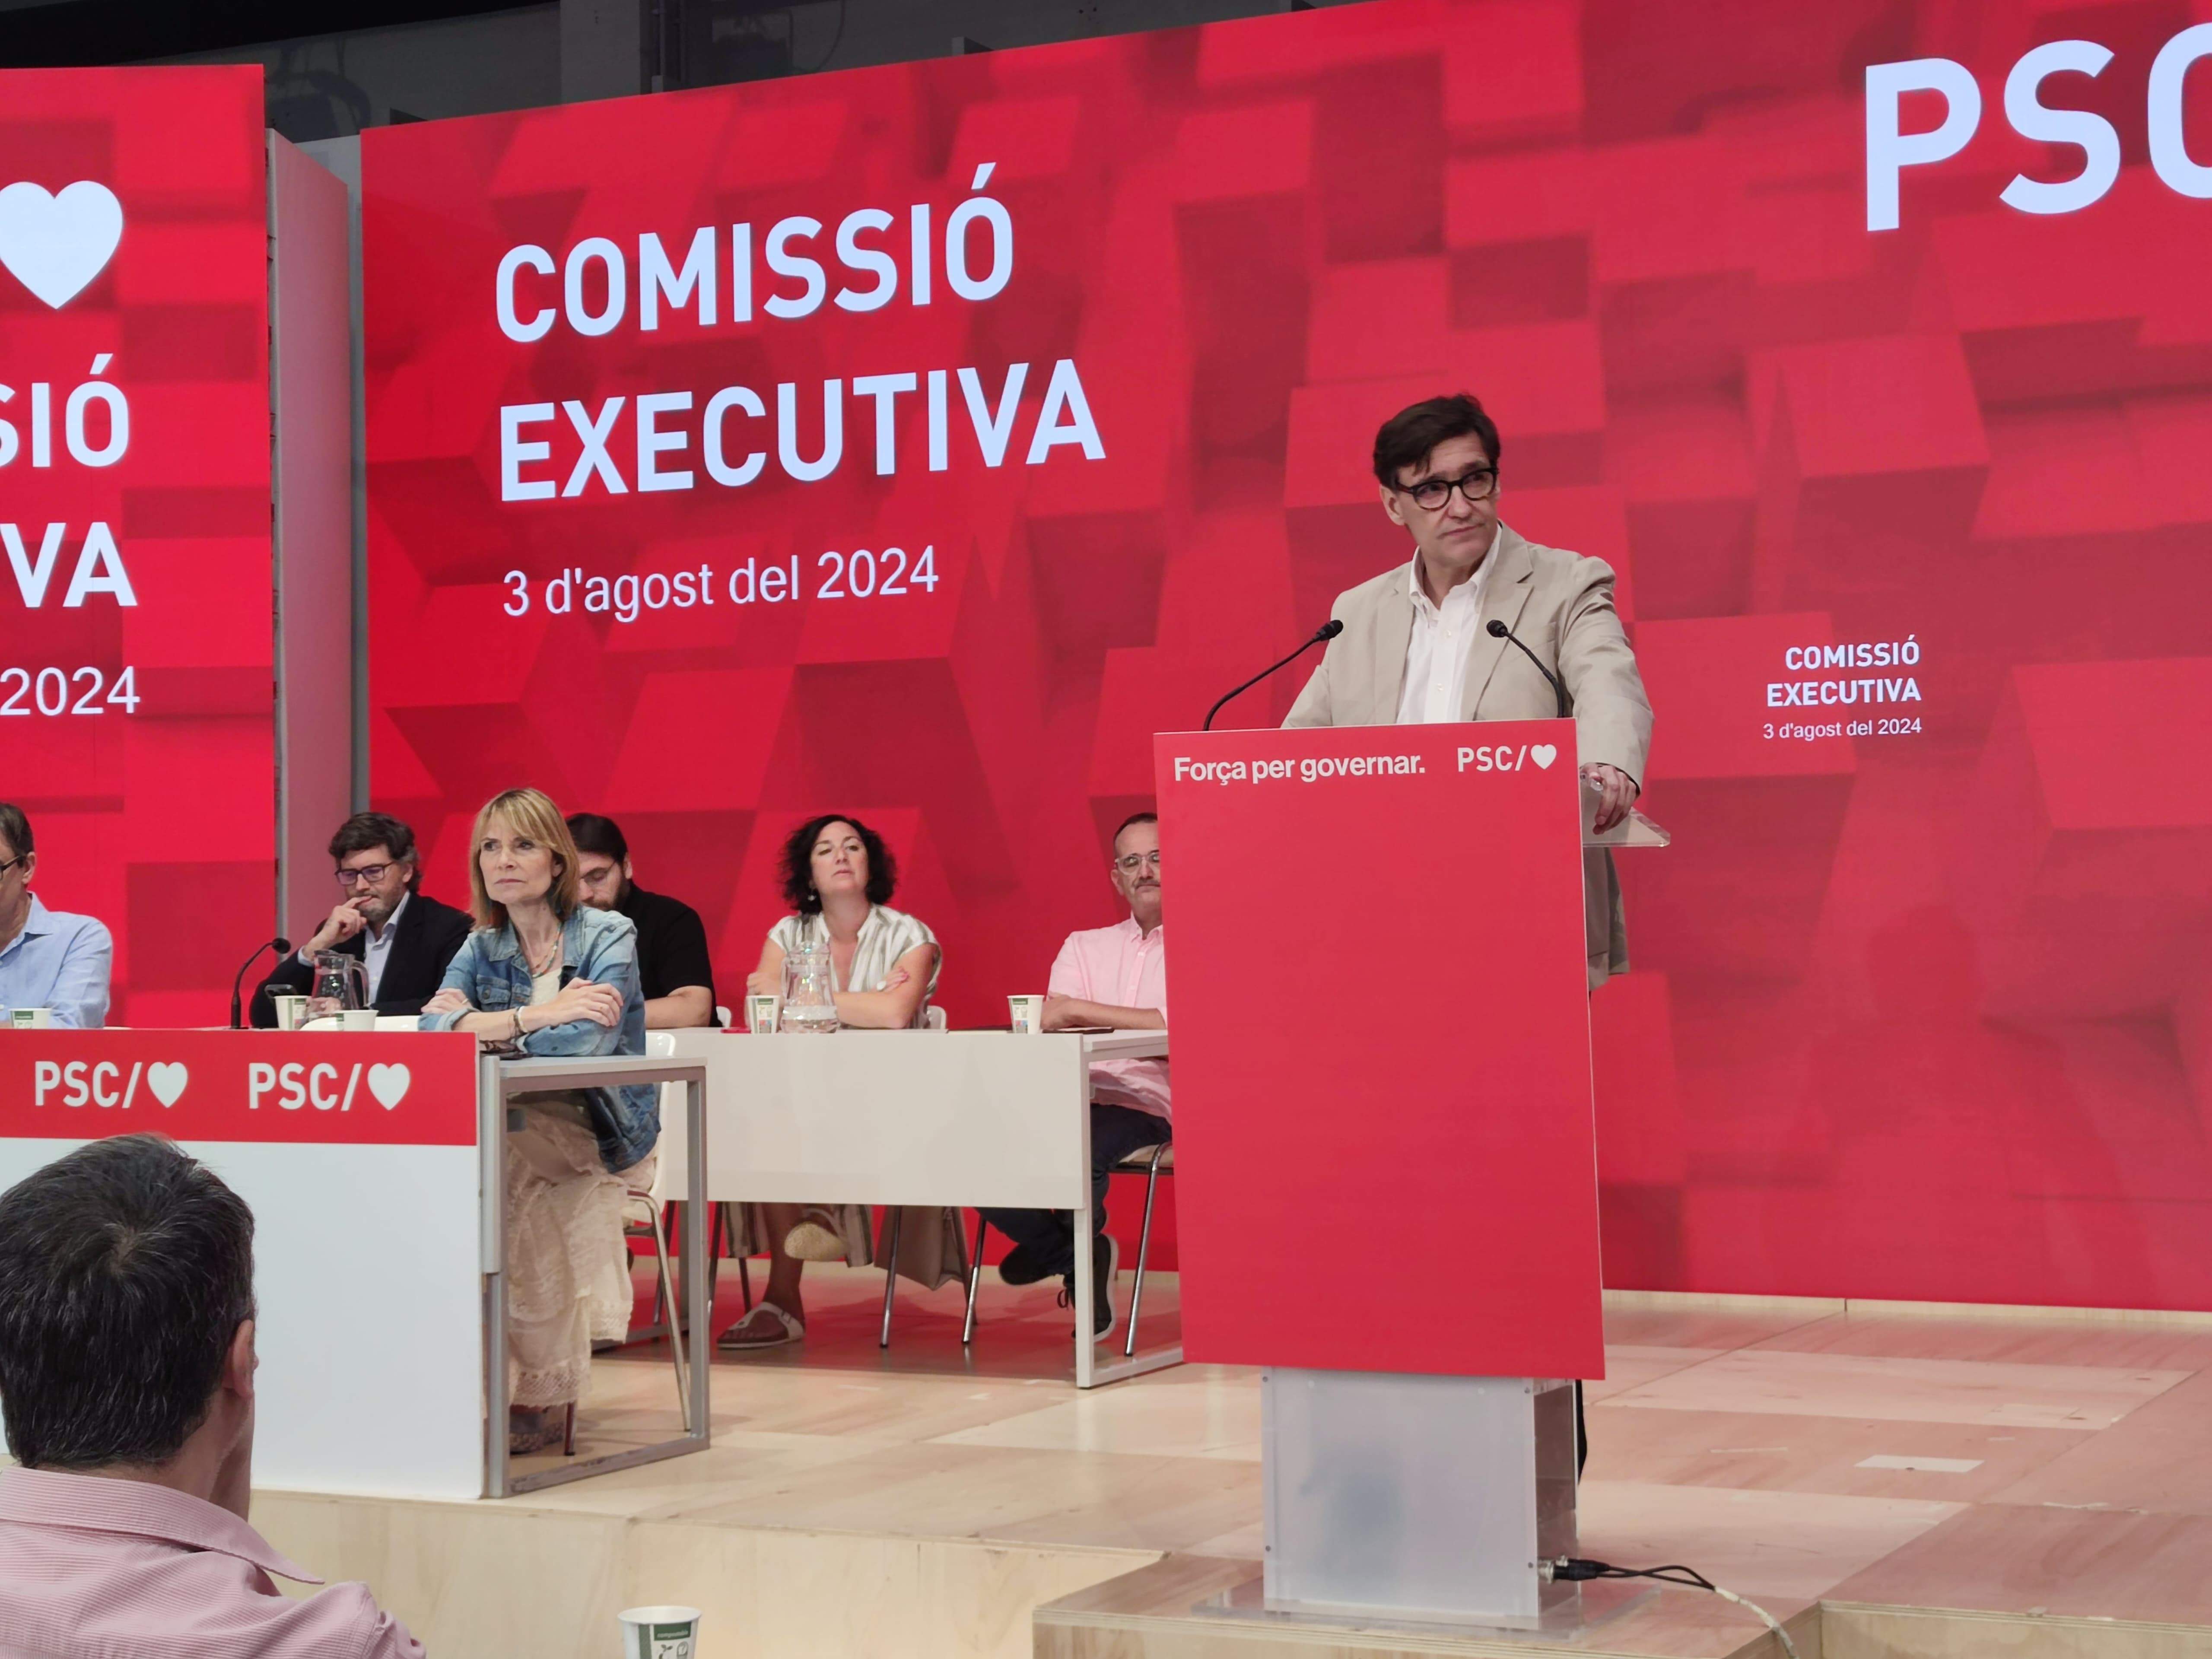 El dardo de Salvador Illa a Puigdemont: "La política es un ejercicio de realismo, no de fantasía"